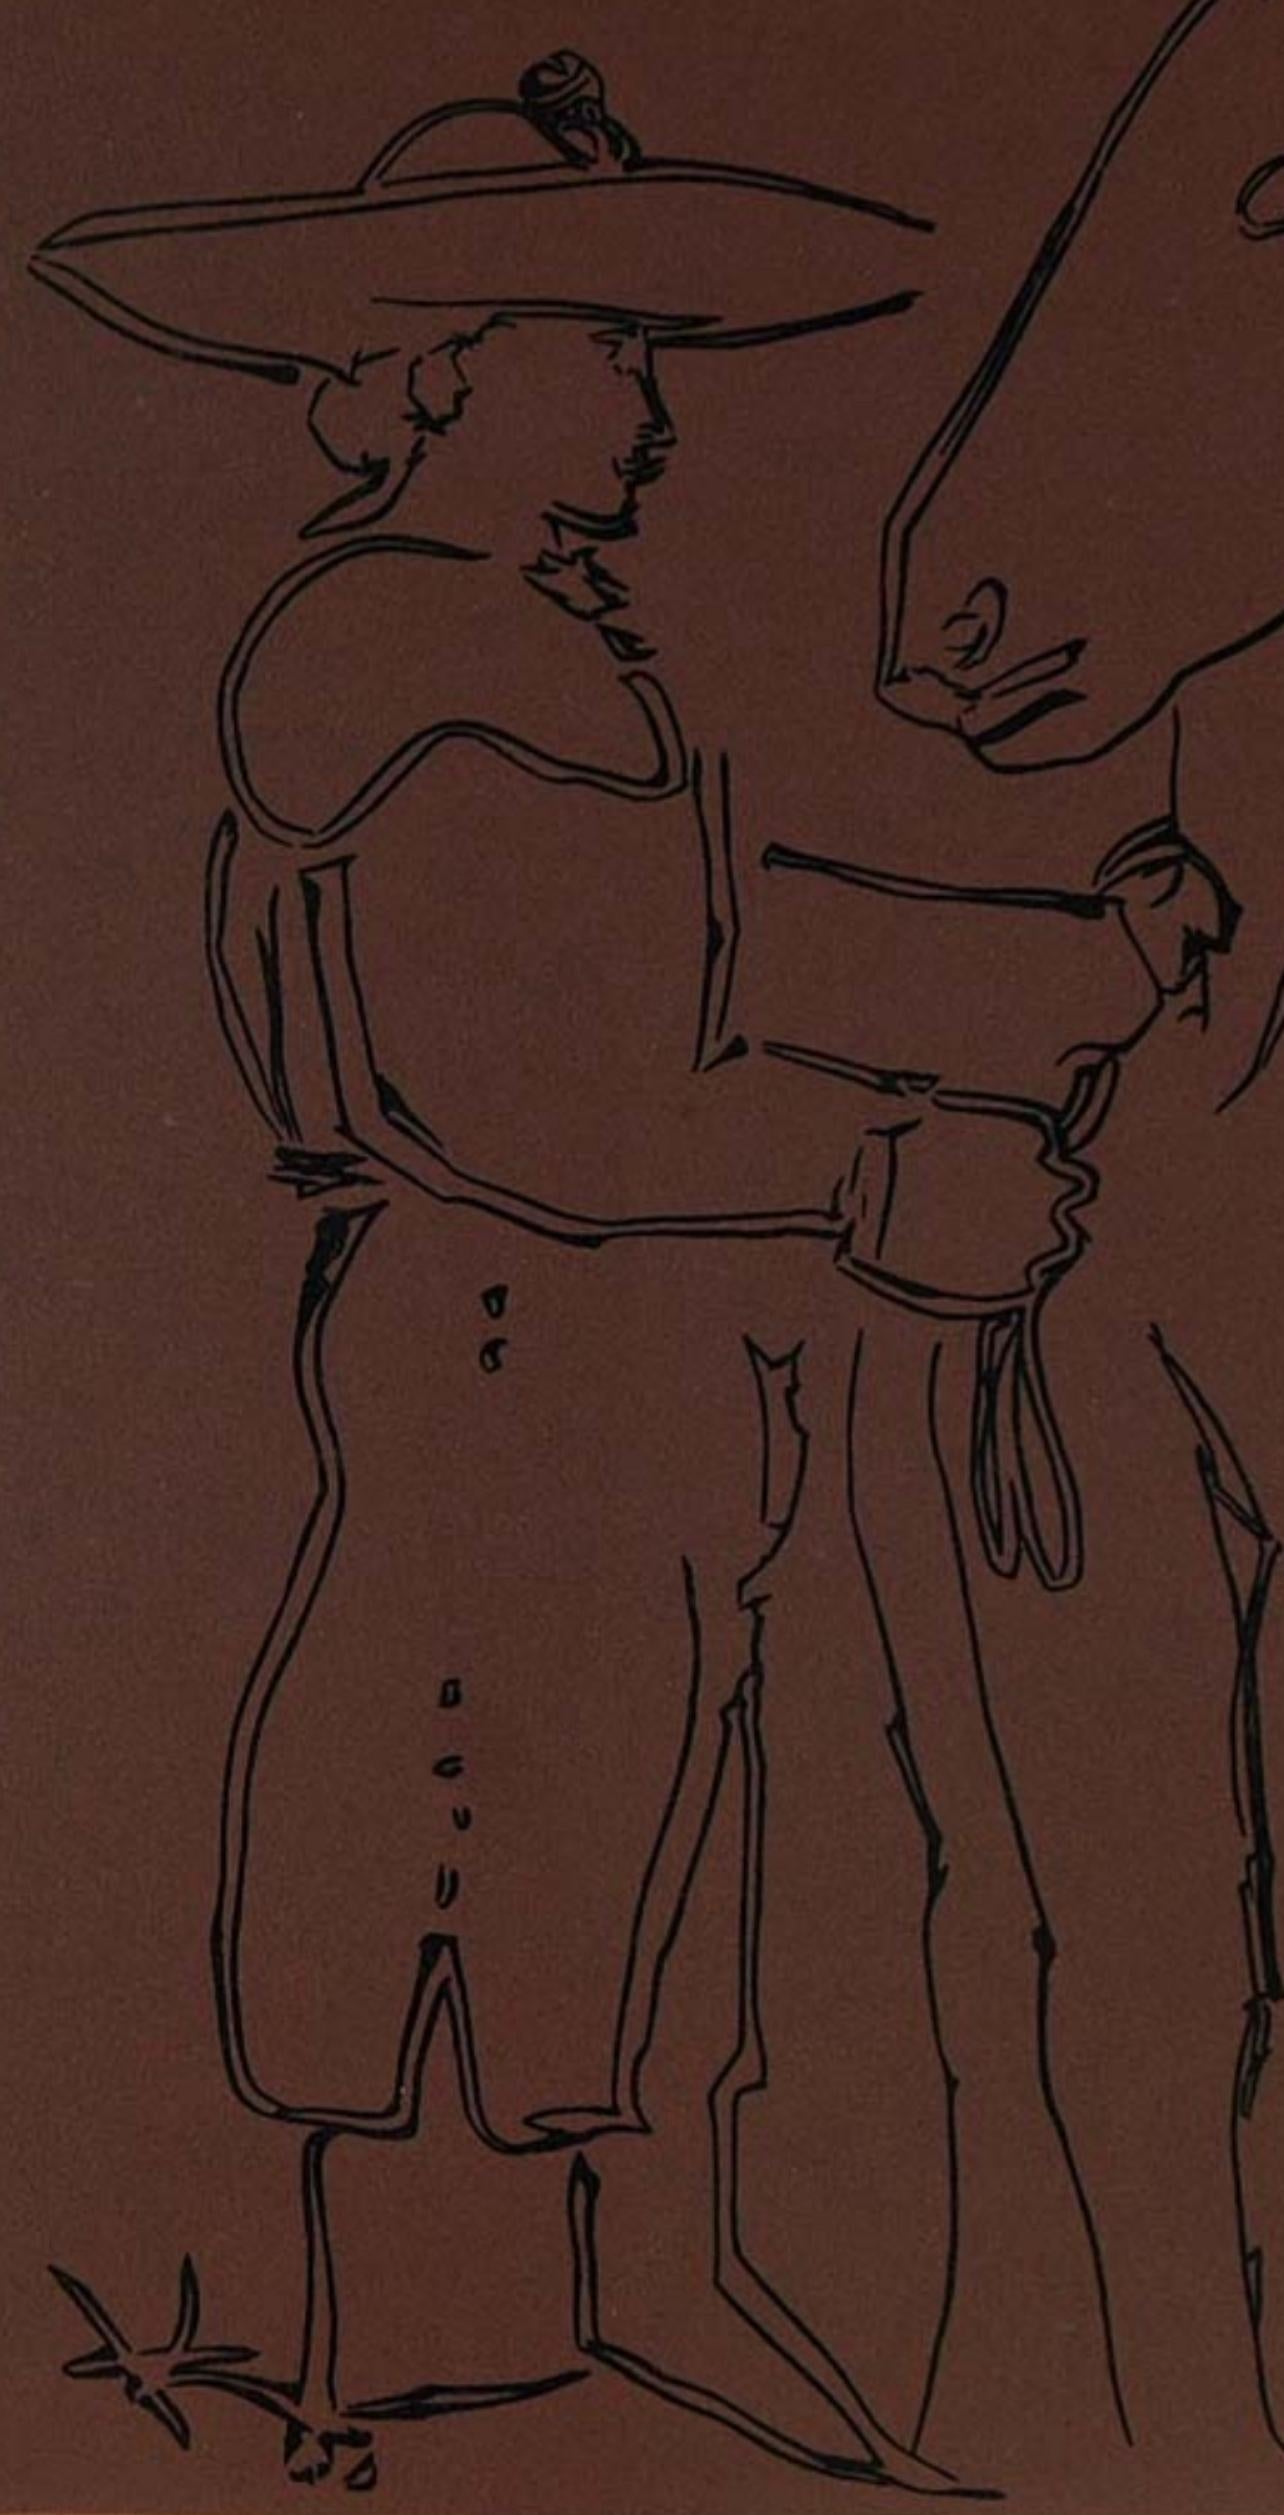 Picasso, Picador debout avec son cheval, Éditions Cercle d'Art (d'après) - Print de Pablo Picasso